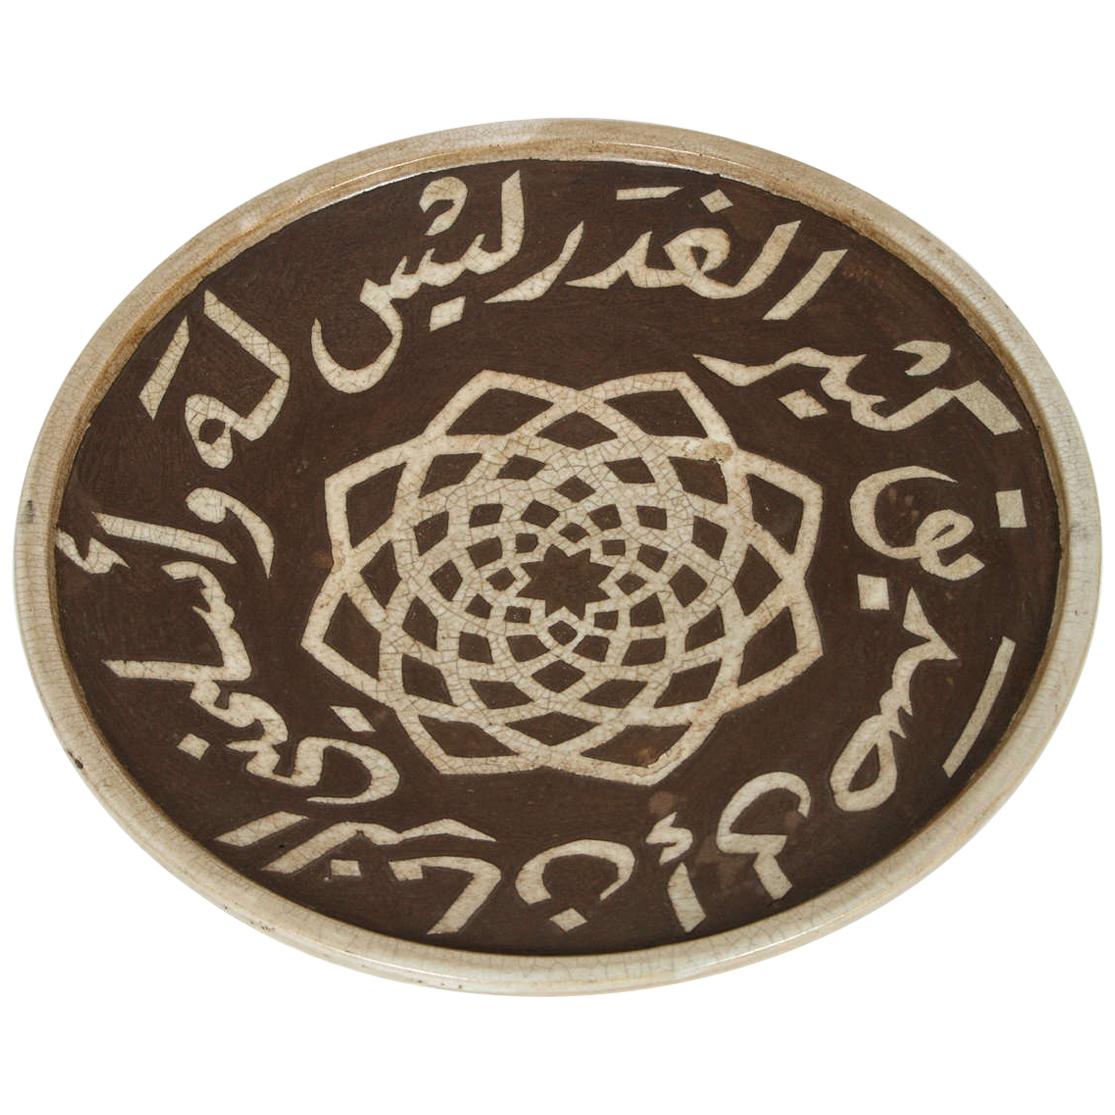 Marokkanischer brauner Keramikteller, gemeißelt mit arabischen Kalligraphie-Schriftzügen